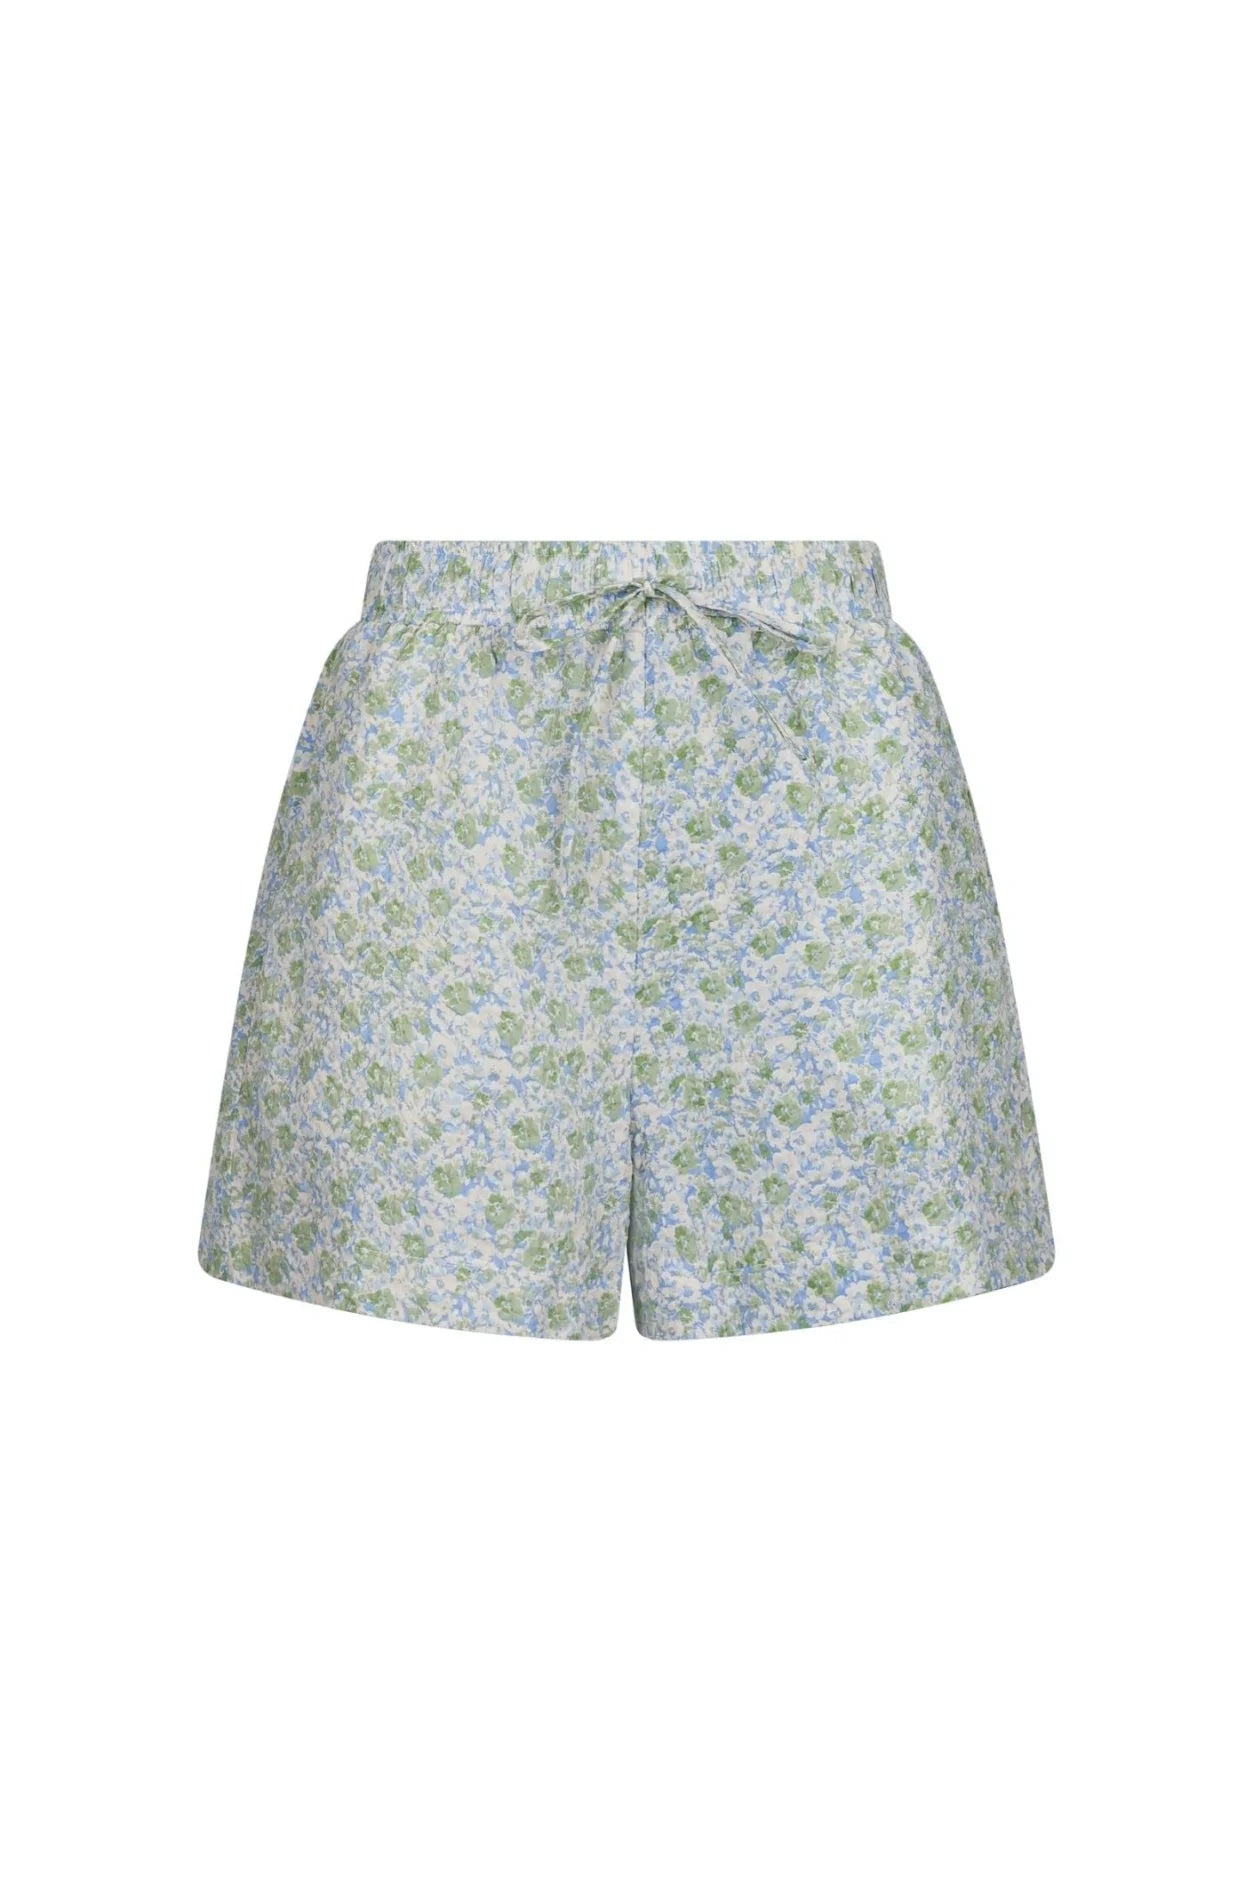 Abbigail Ocean Breeze Shorts - Shorts